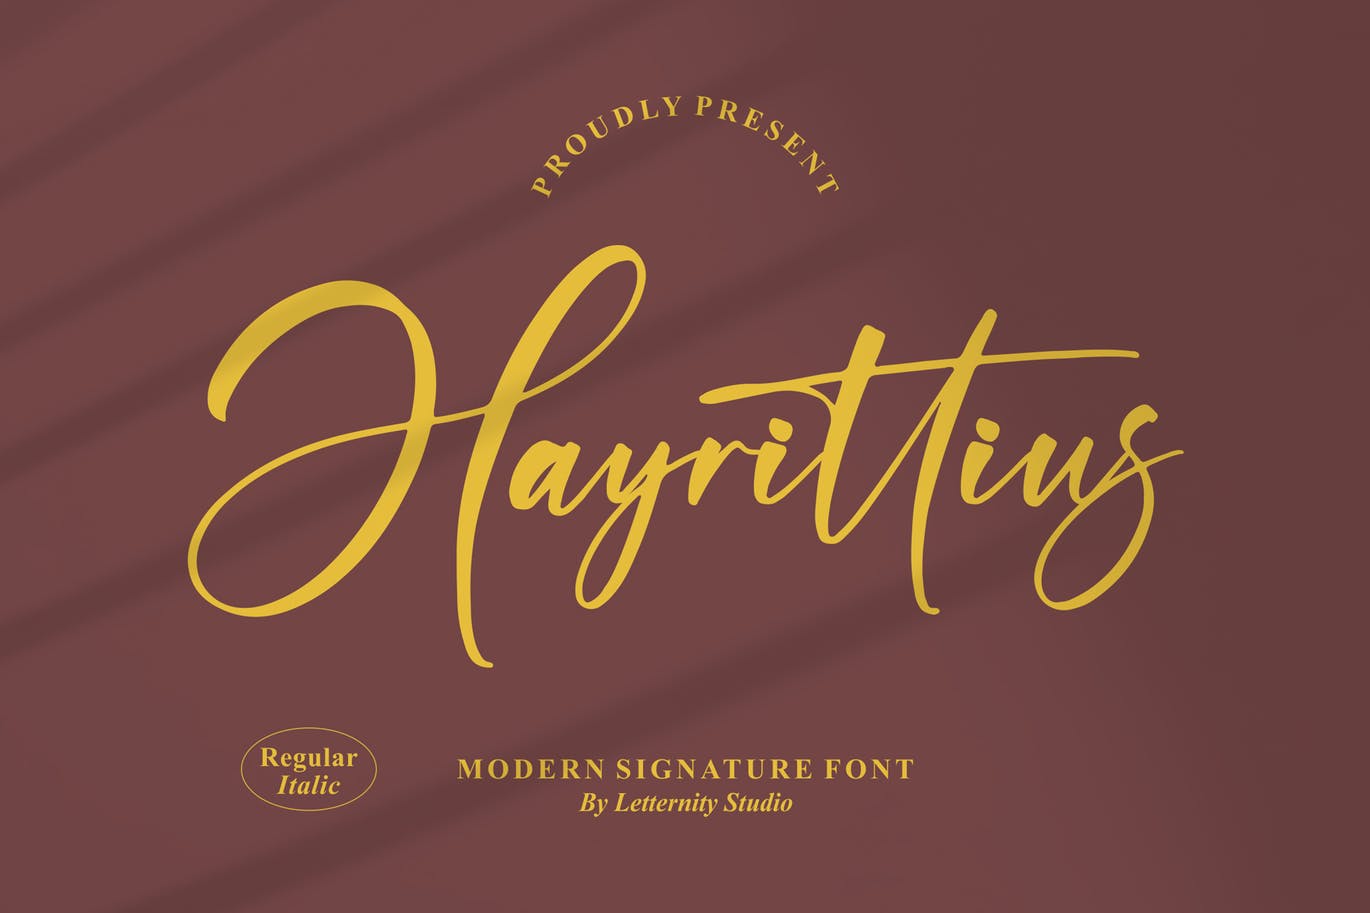 艺术个性签名字体素材 Hayrittius Signature Font 设计素材 第1张